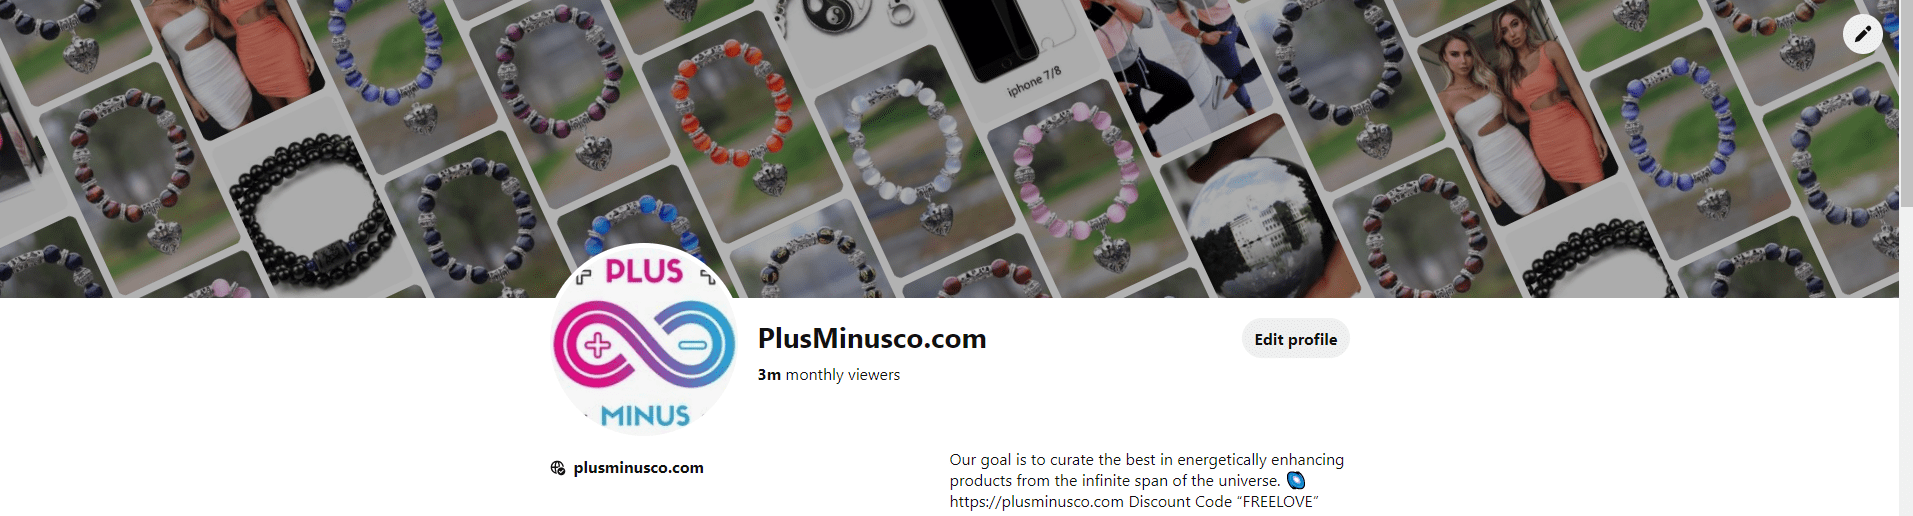 Armbånd - plusminusco.com